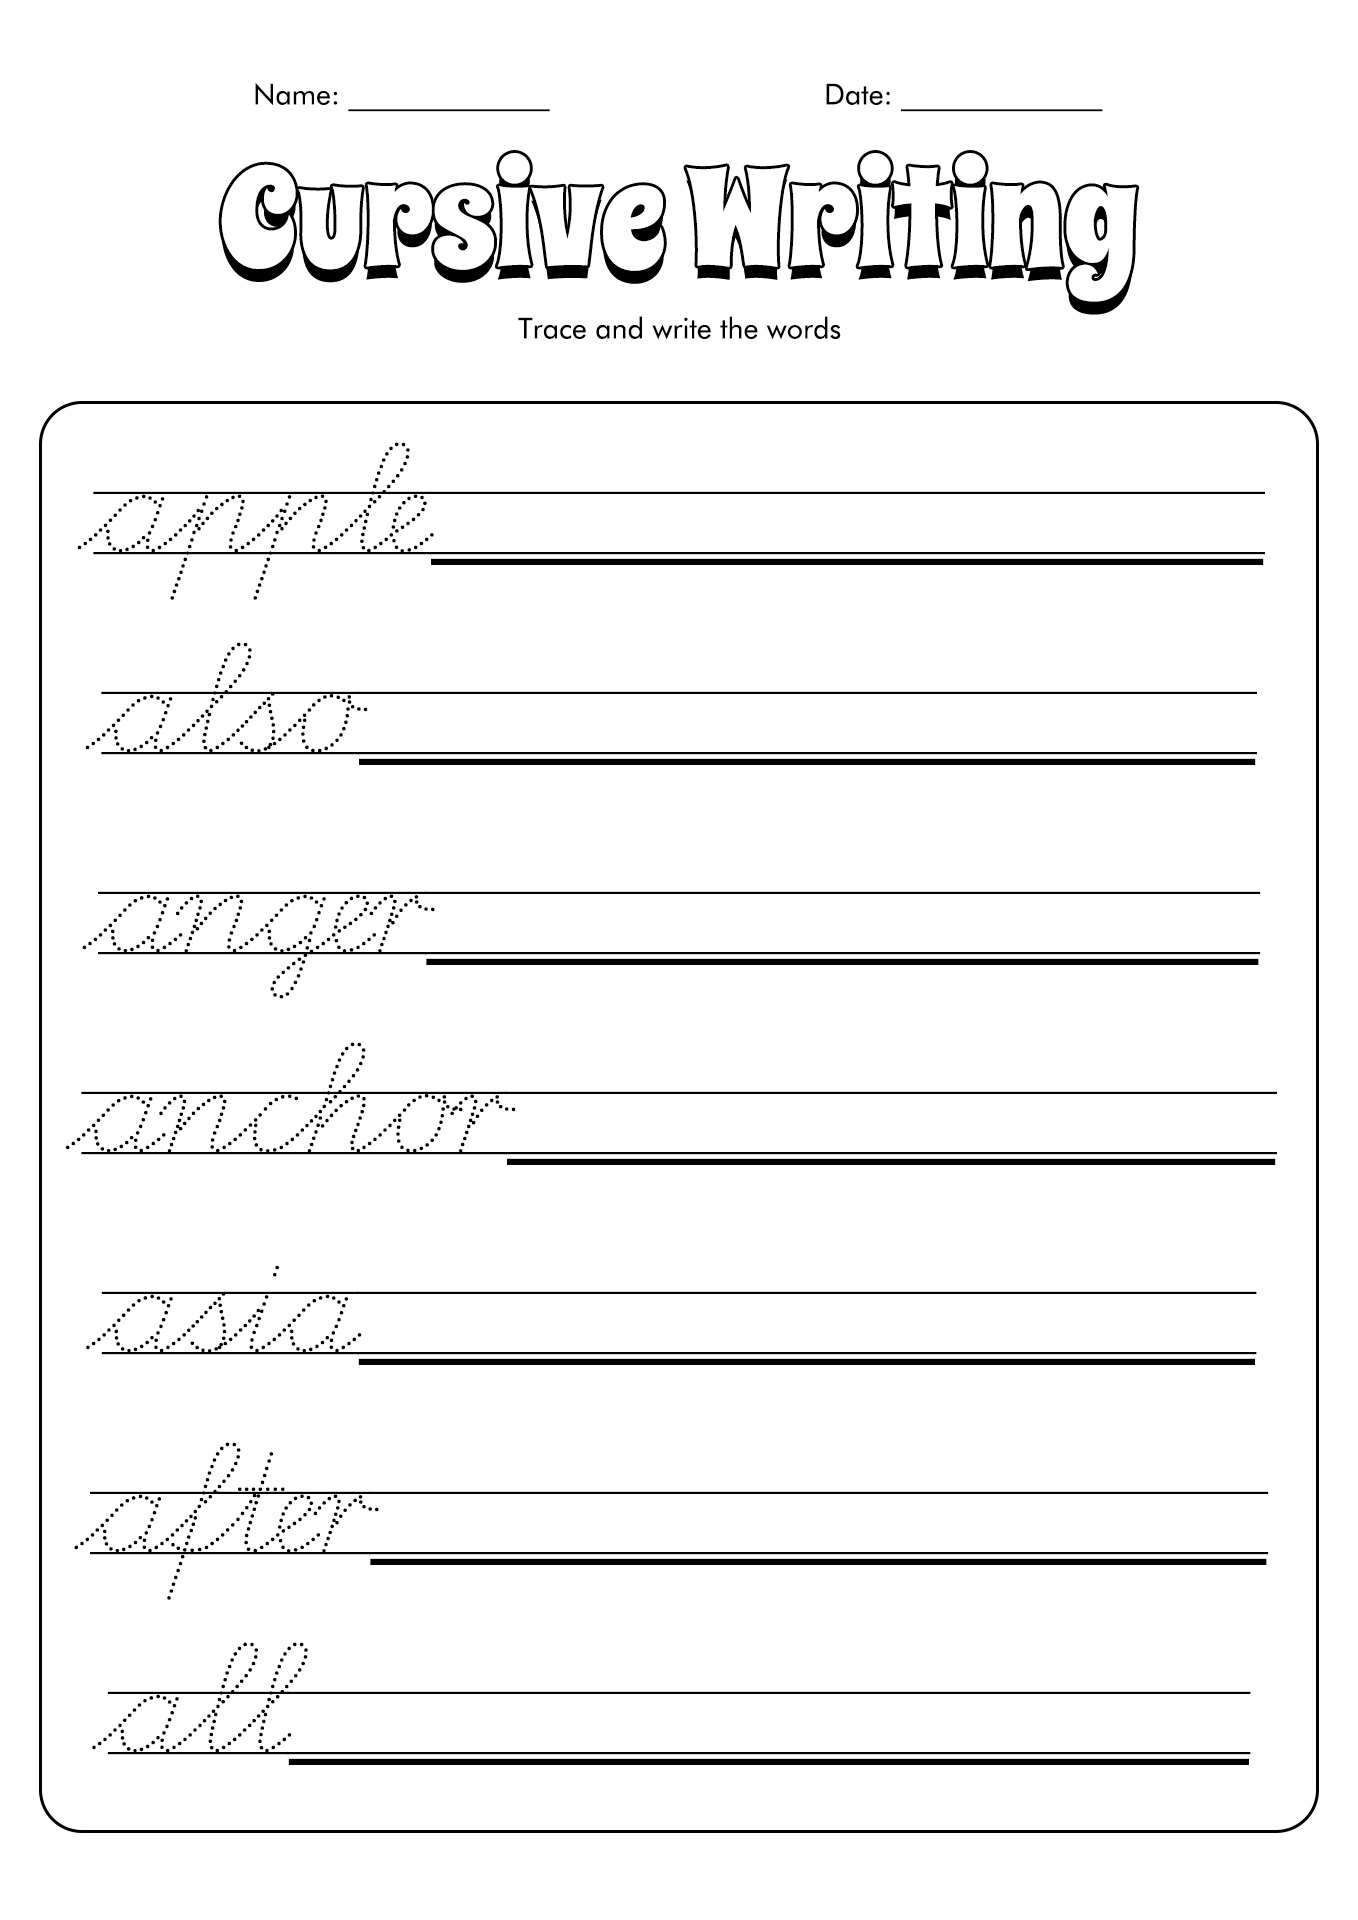 14 Best Images of Practice Writing Words Worksheets - Kindergarten ...